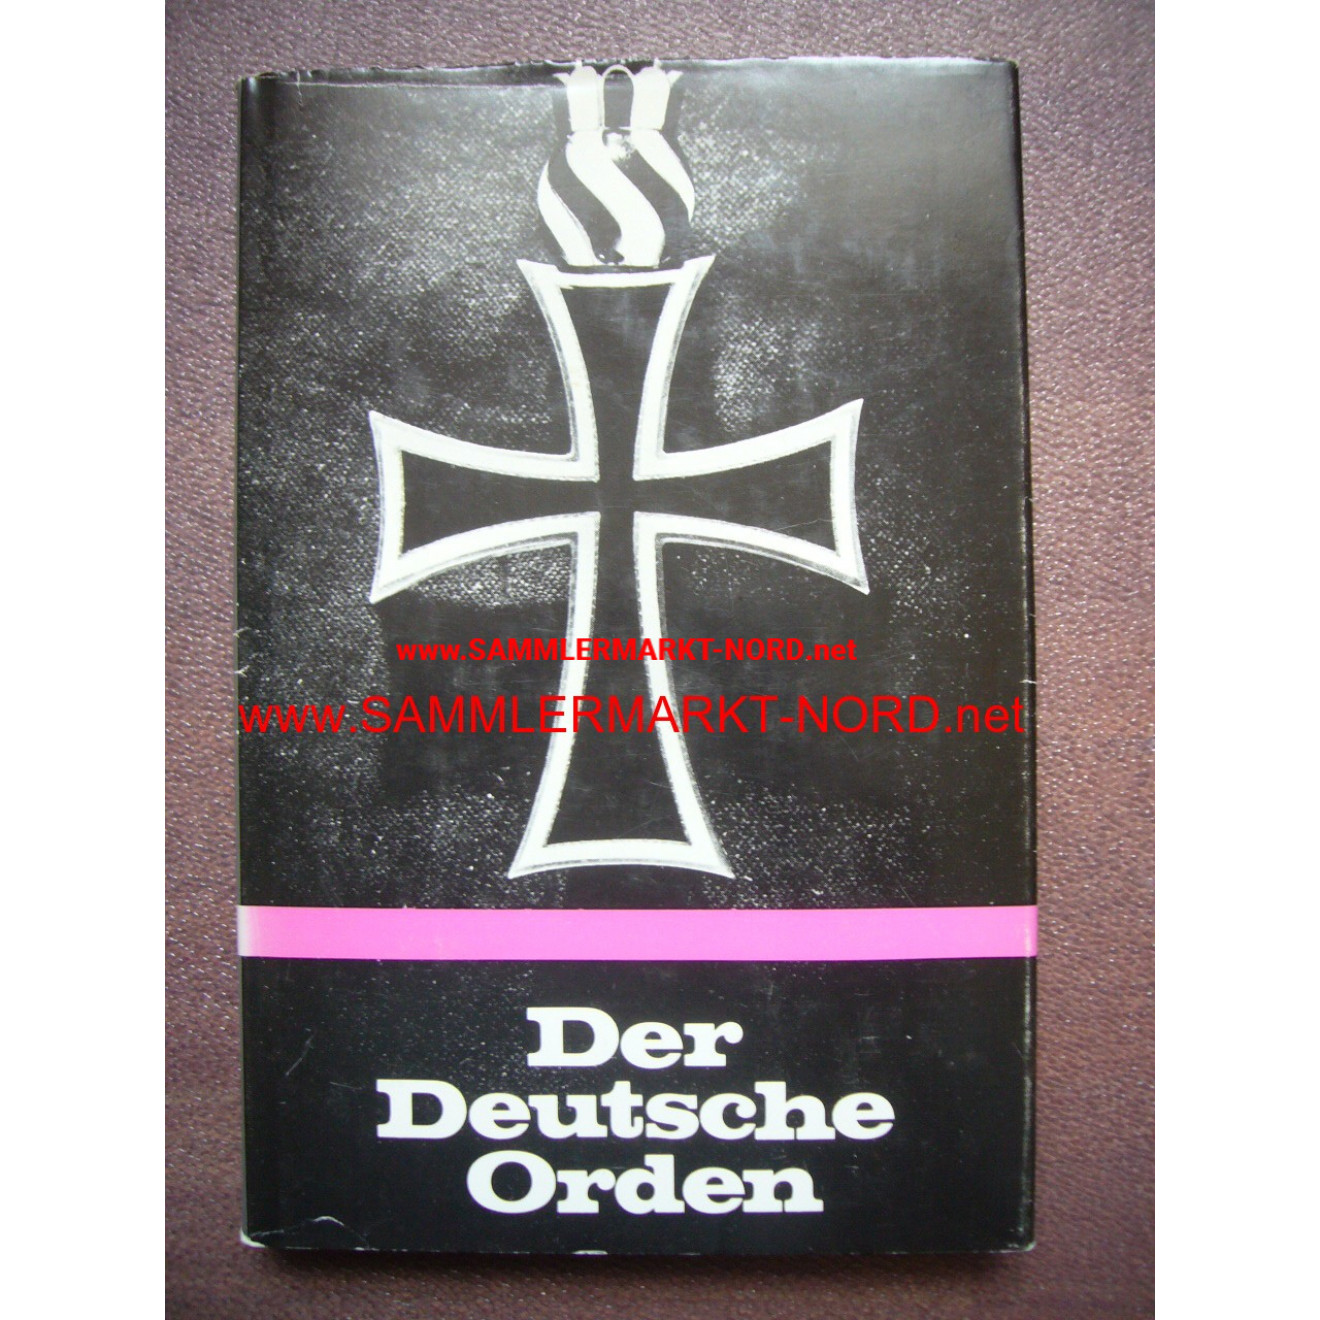 Der Deutsche Orden